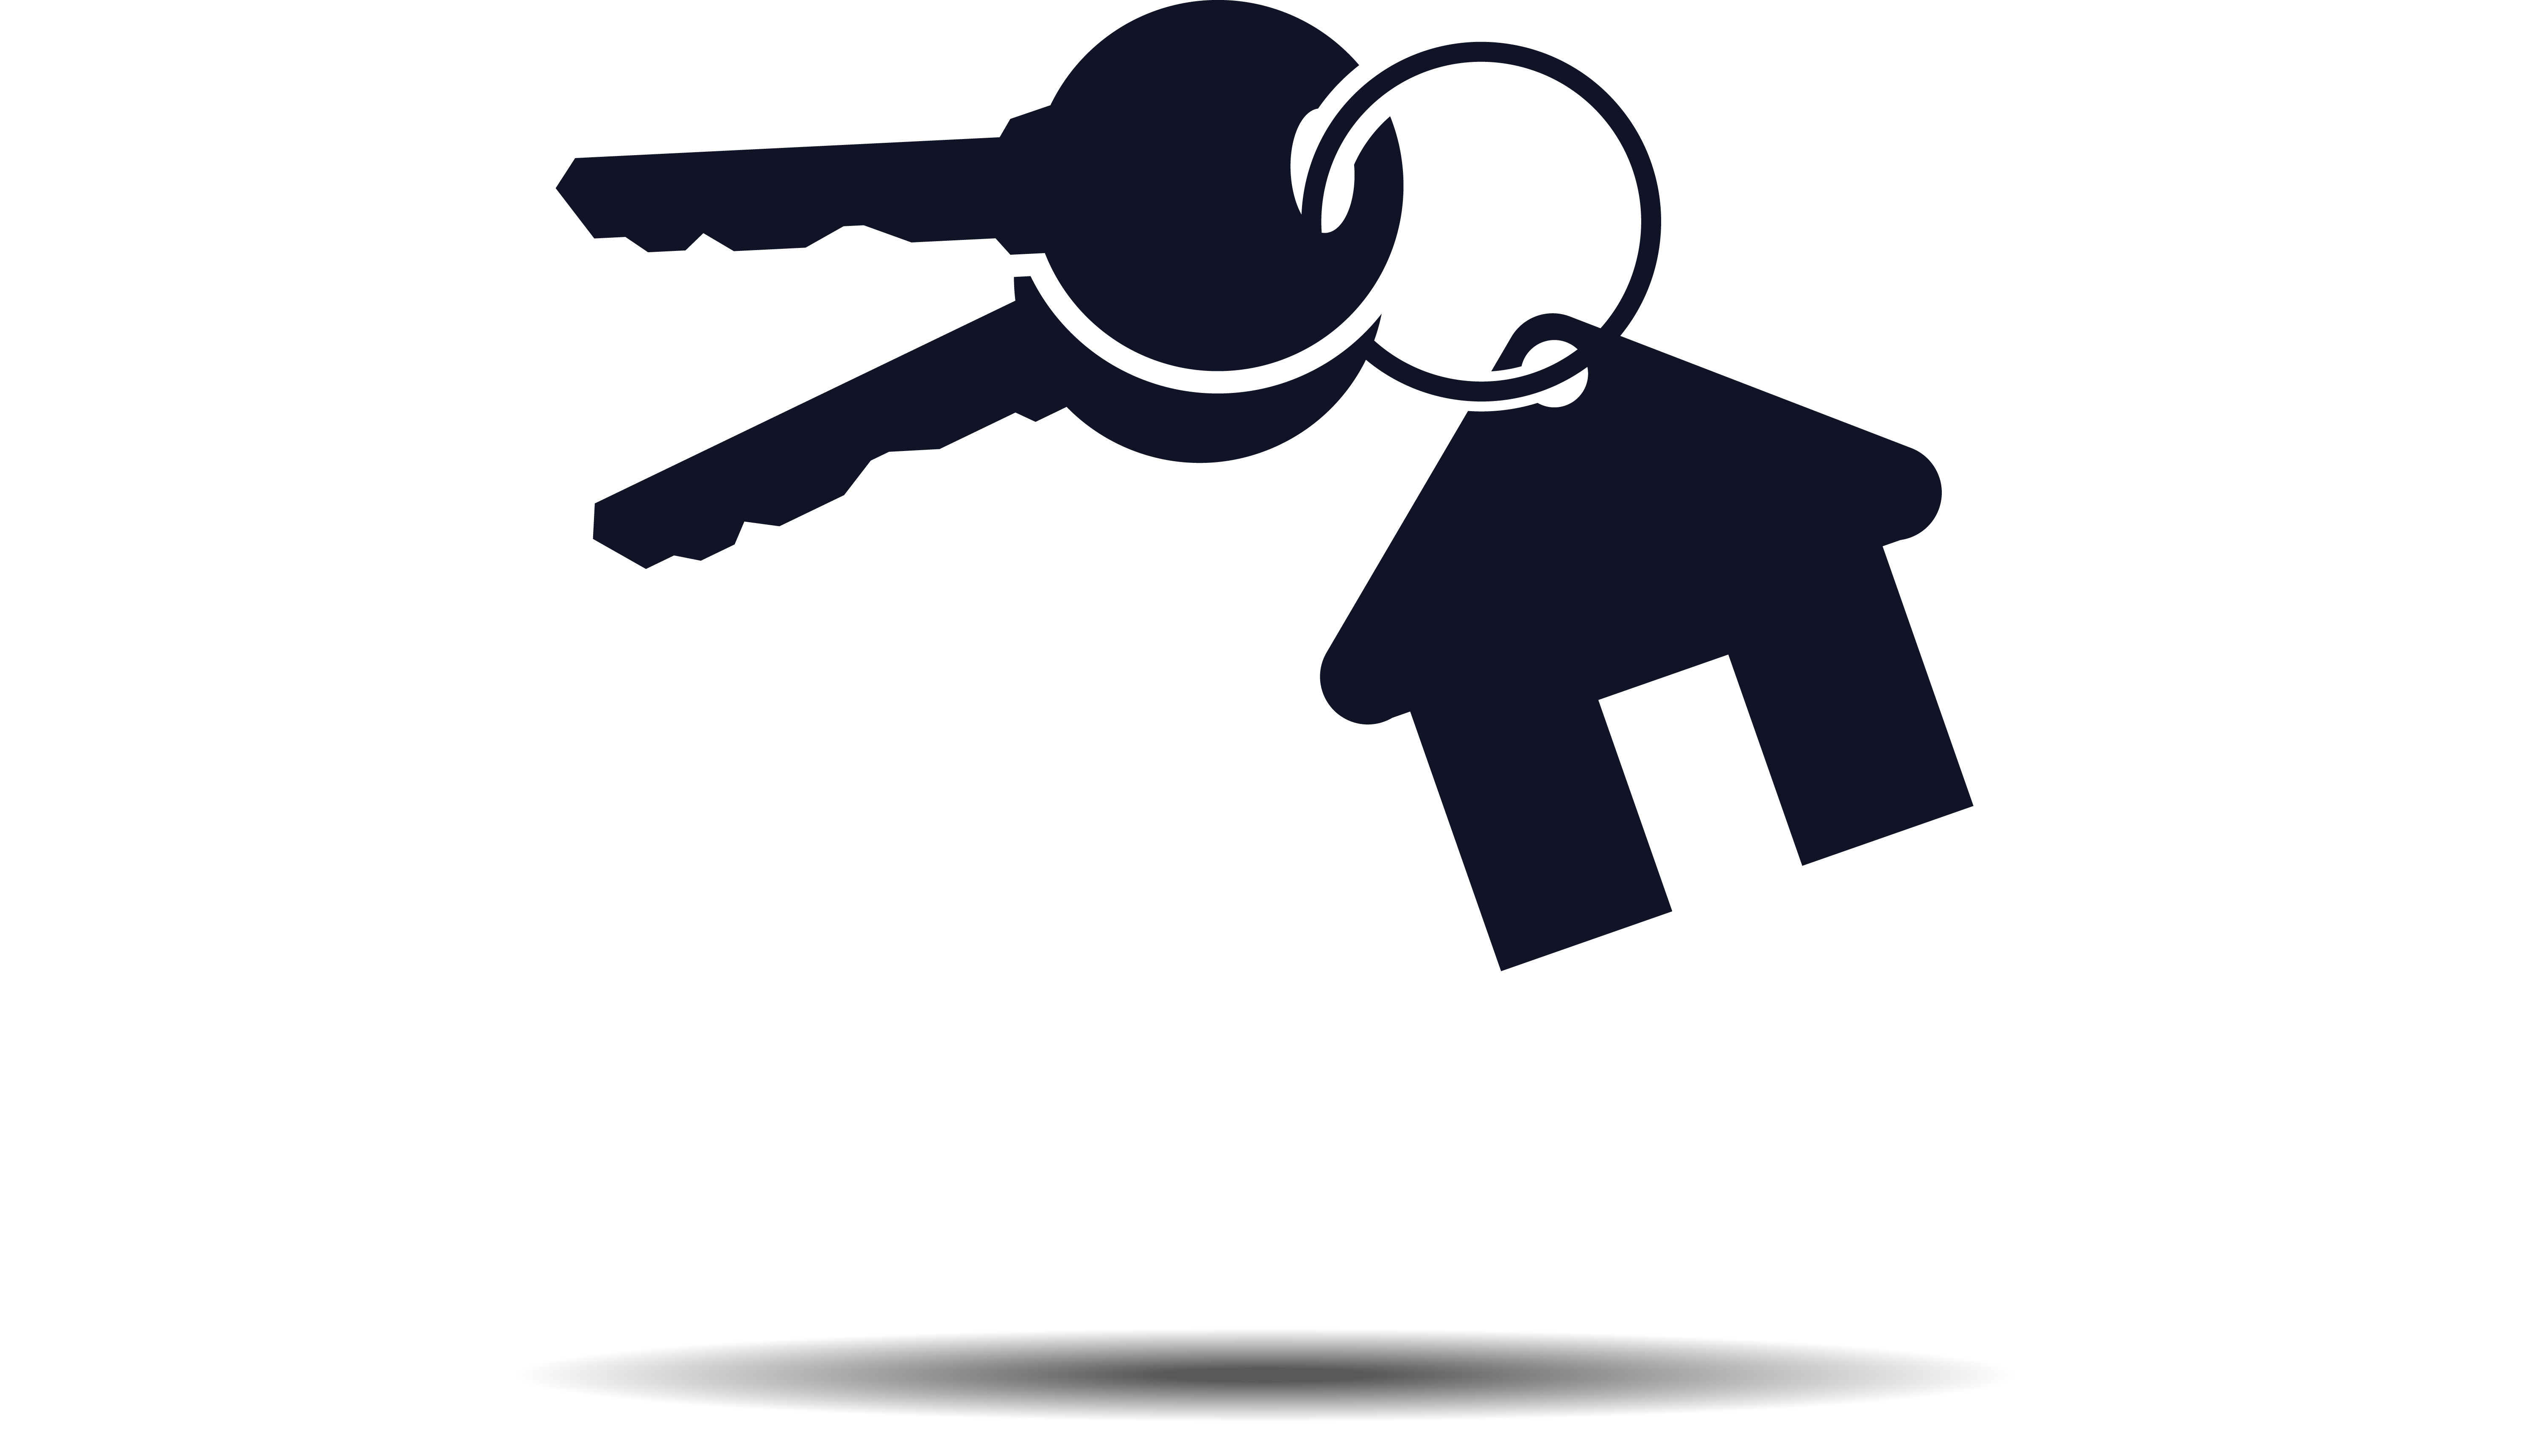 Key house key